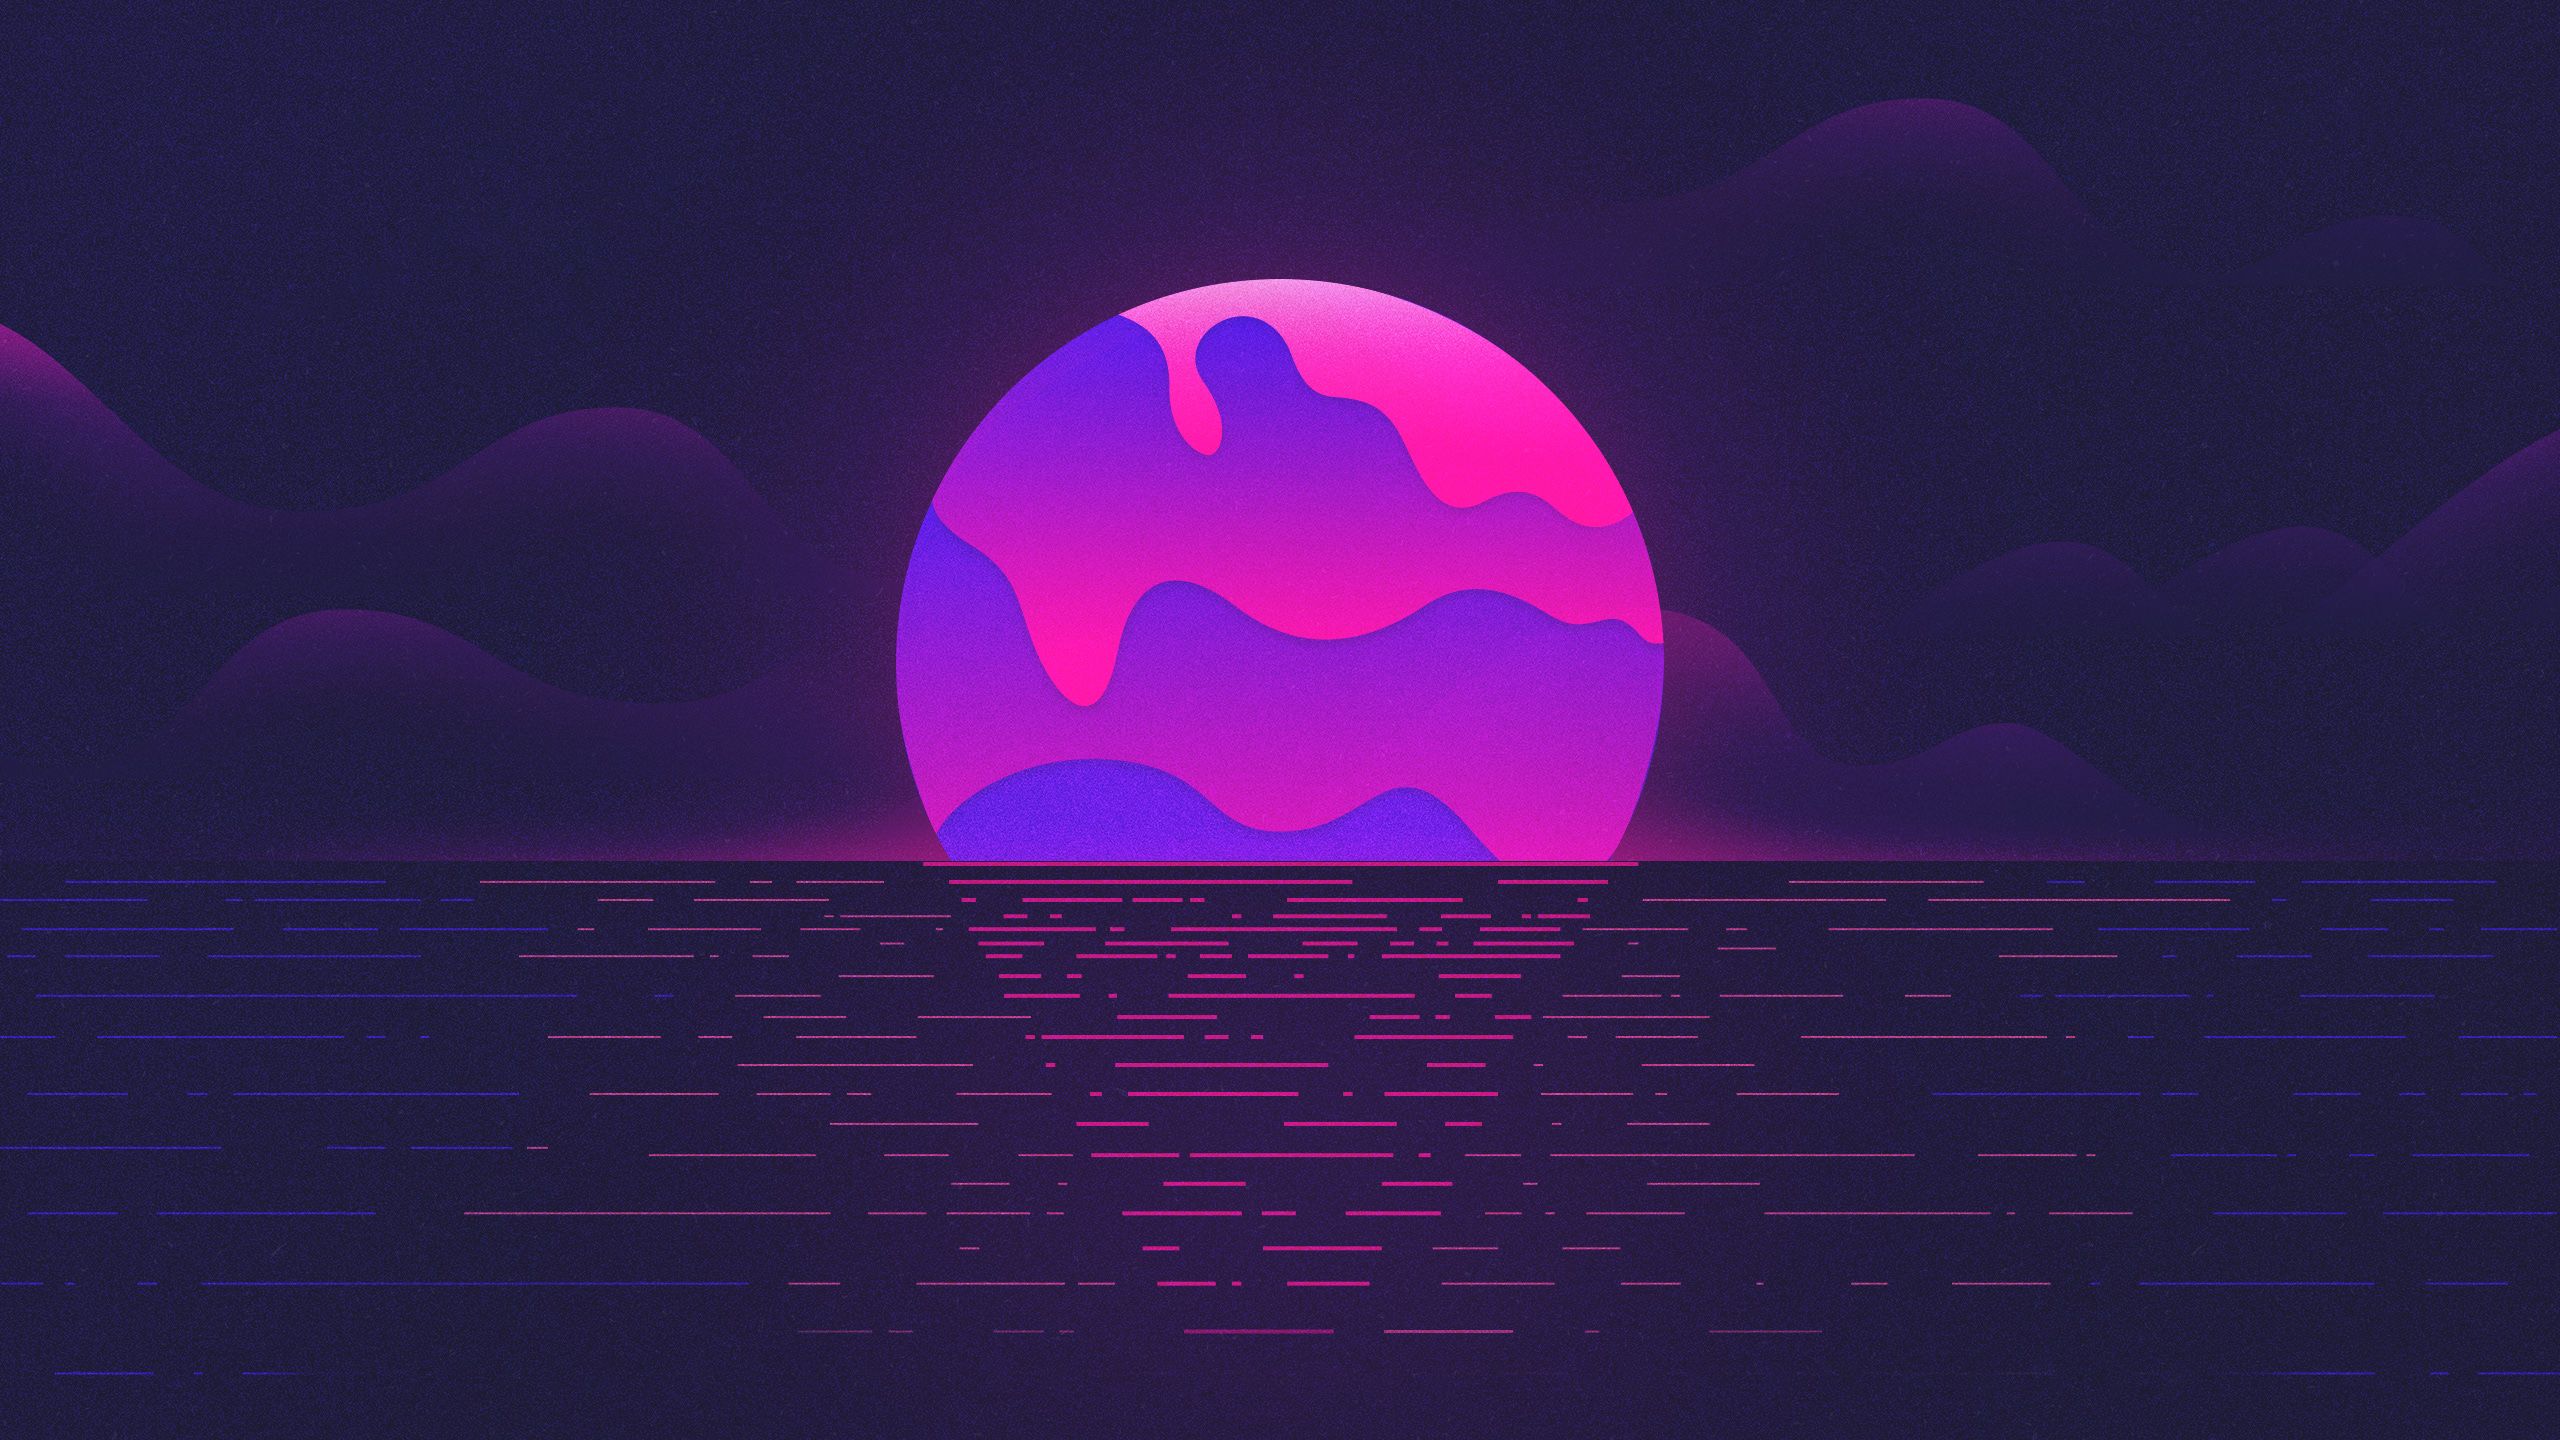 Màu tím là sự kết hợp hài hòa giữa sự yên bình và cảm xúc. Và với Purple Moon - Wallpapers, bạn sẽ được trải nghiệm cảm giác như đang ngắm nhìn vầng trăng dịu dàng trong đêm. Tận hưởng không gian riêng tư và tình cảm với bức hình nền này.